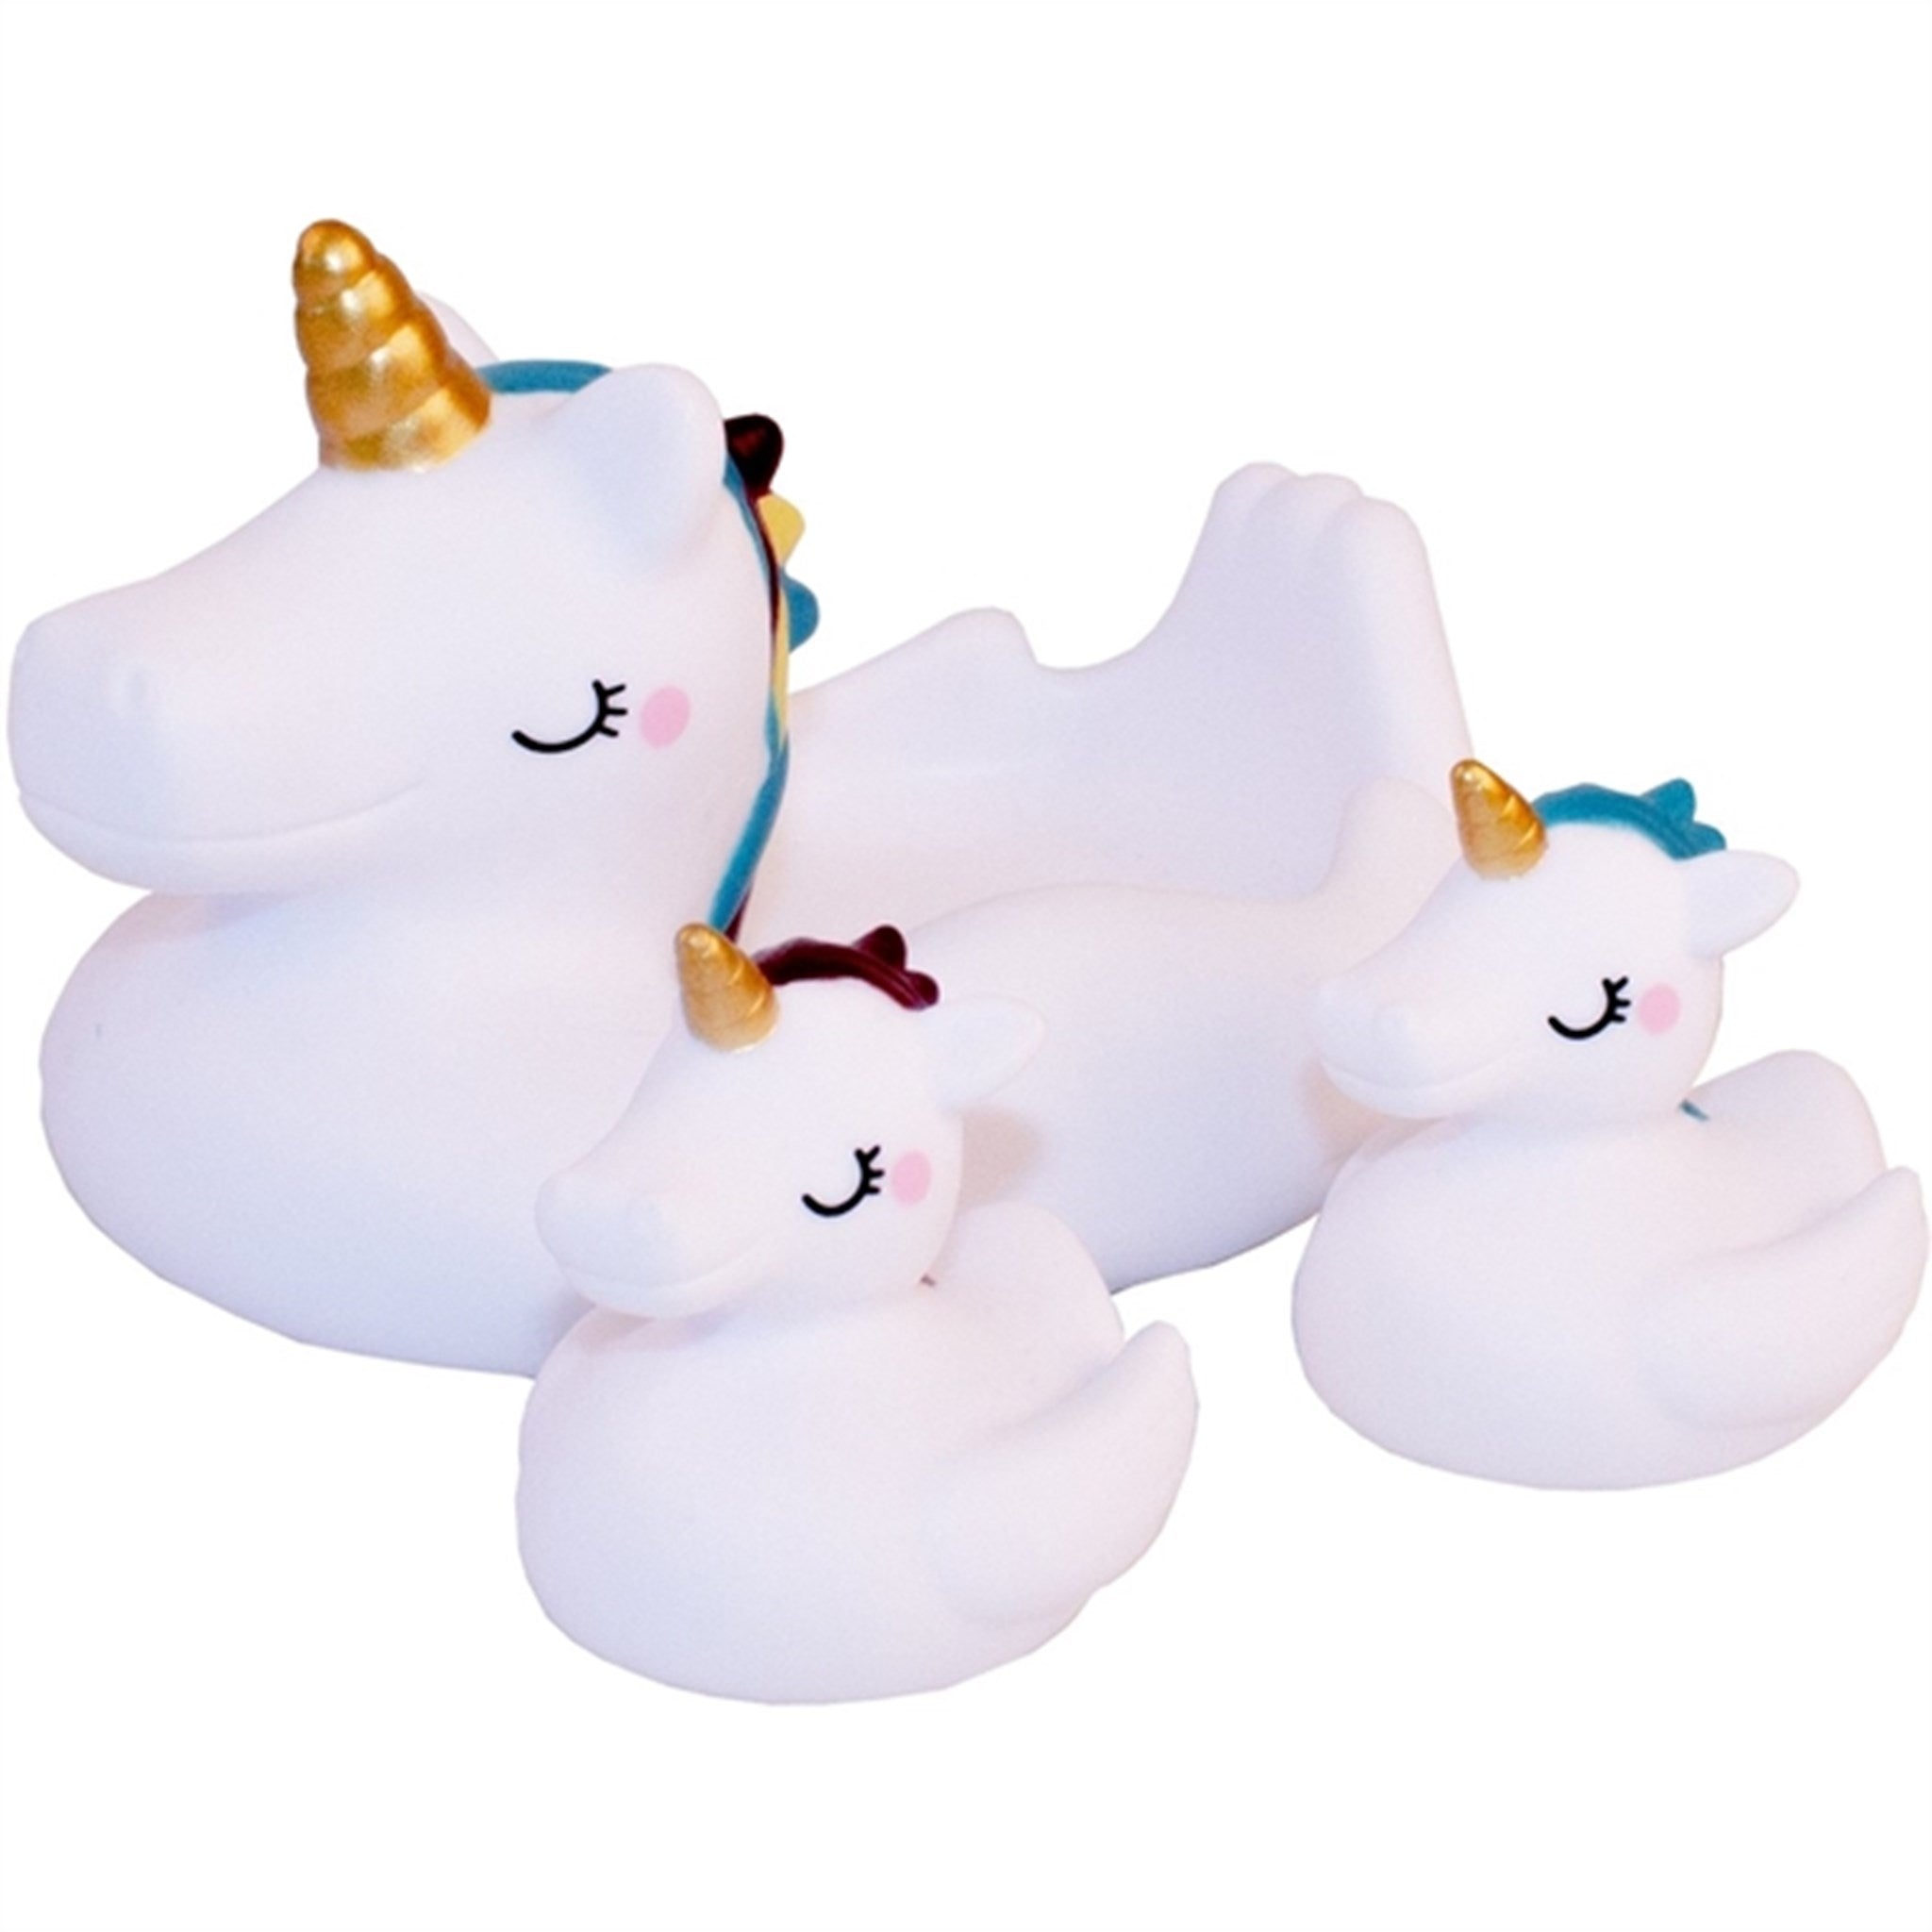 Magni Unicorn Bath Toys 3 Pieces In A Set White 2